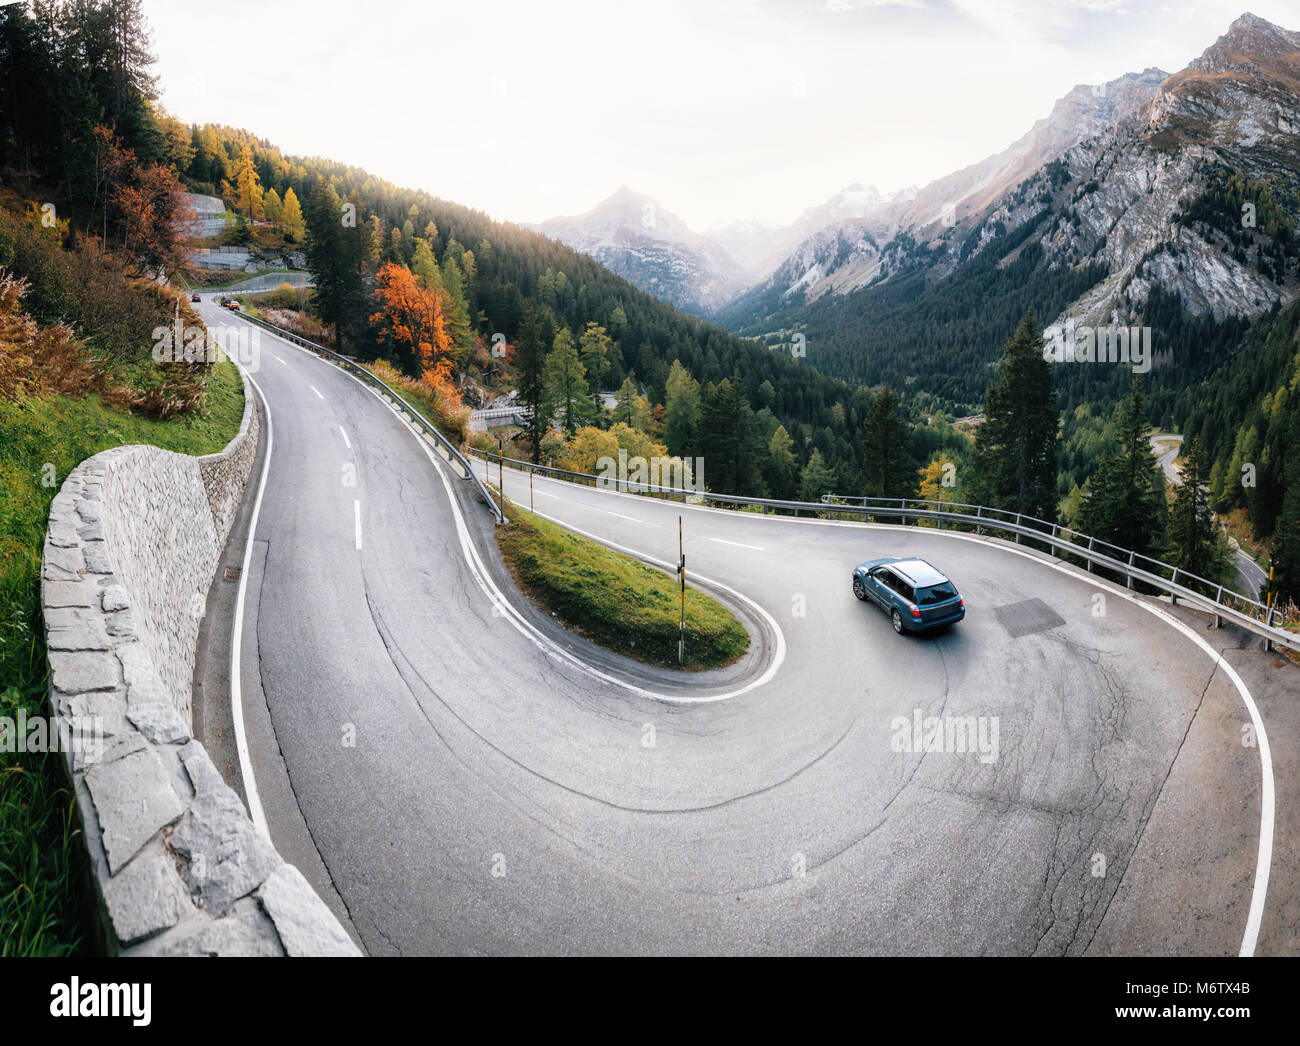 Abenteuer Reise mit dem Auto über kurvenreiche Berg Lake Road, Malojapass,  Schweiz Stockfotografie - Alamy